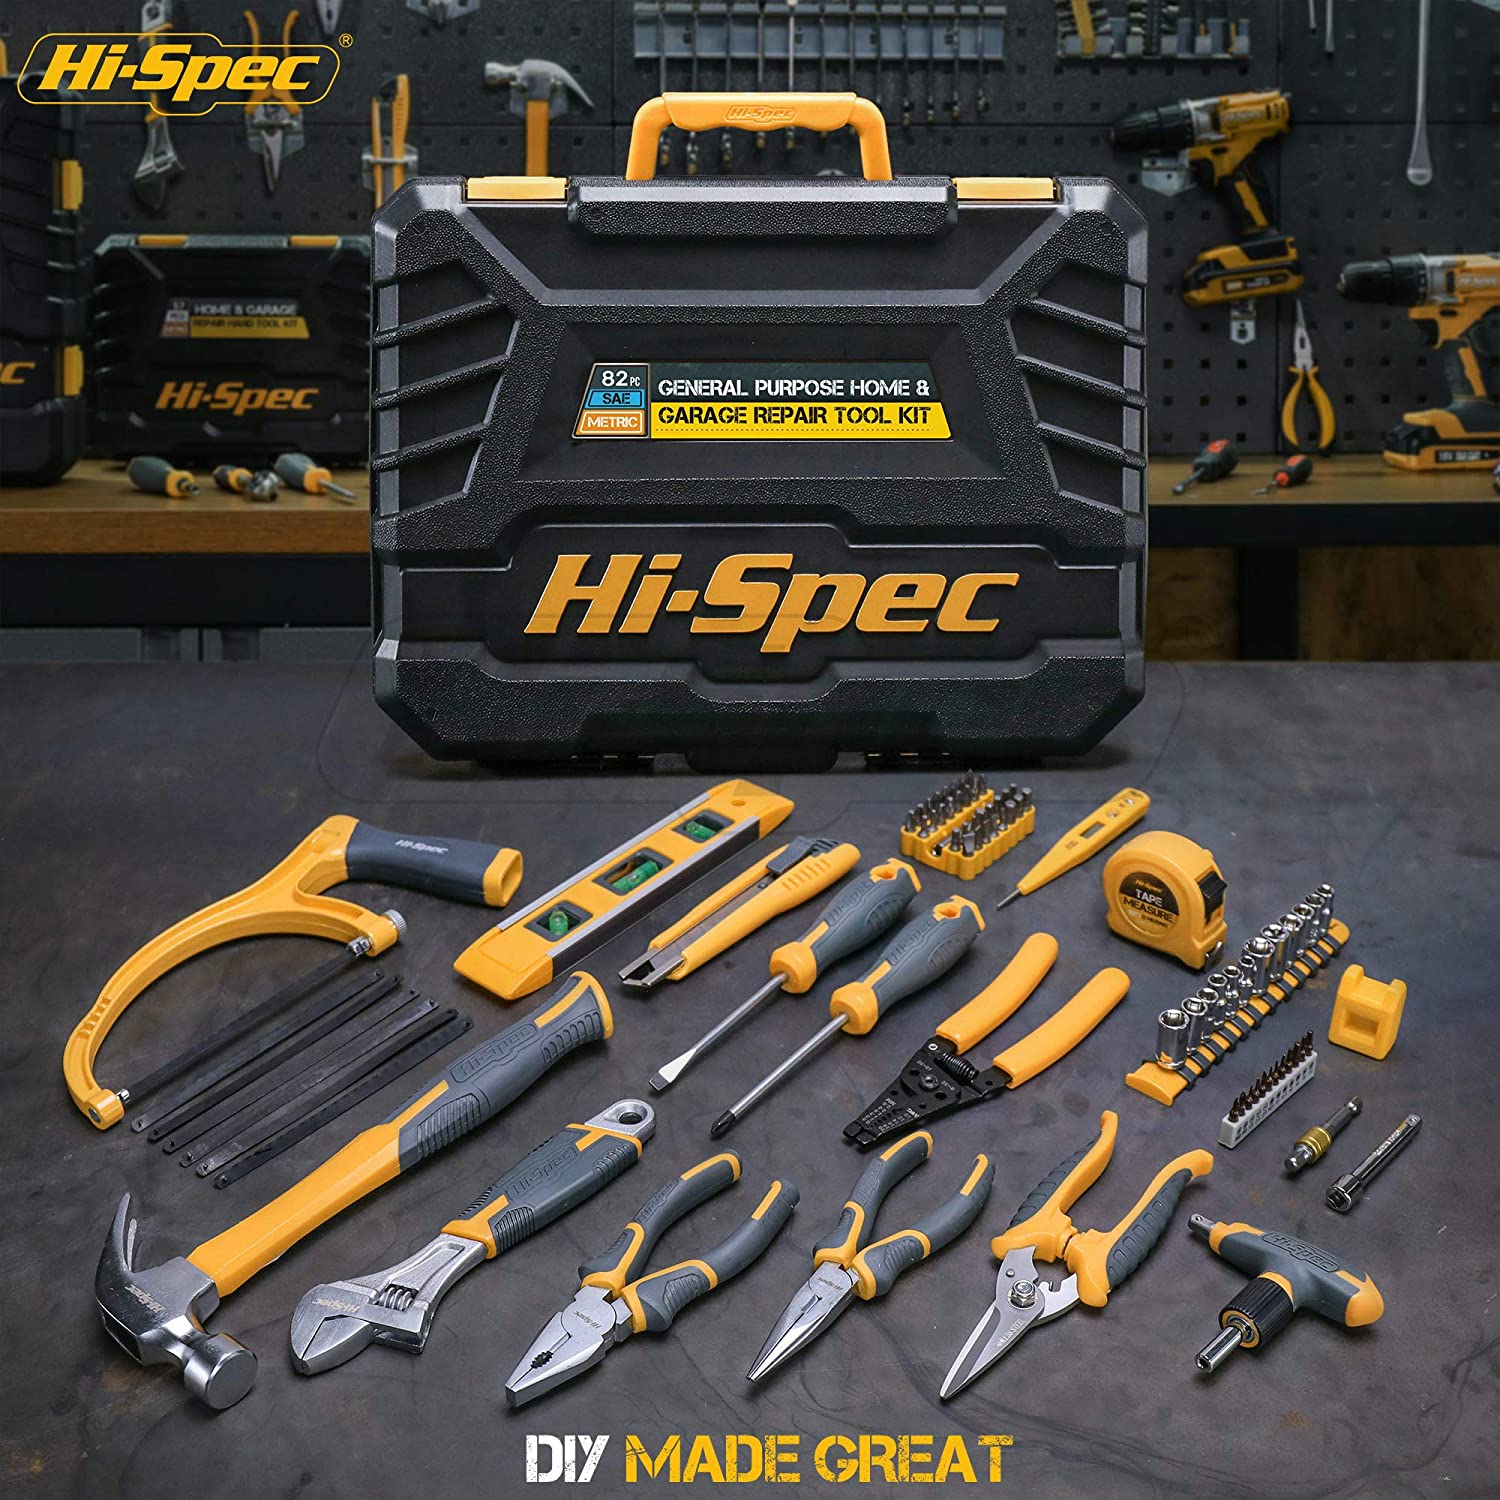 Hi-Spec Auto Mechanics Tool Kit Set — HI-SPEC® Tools Official Site